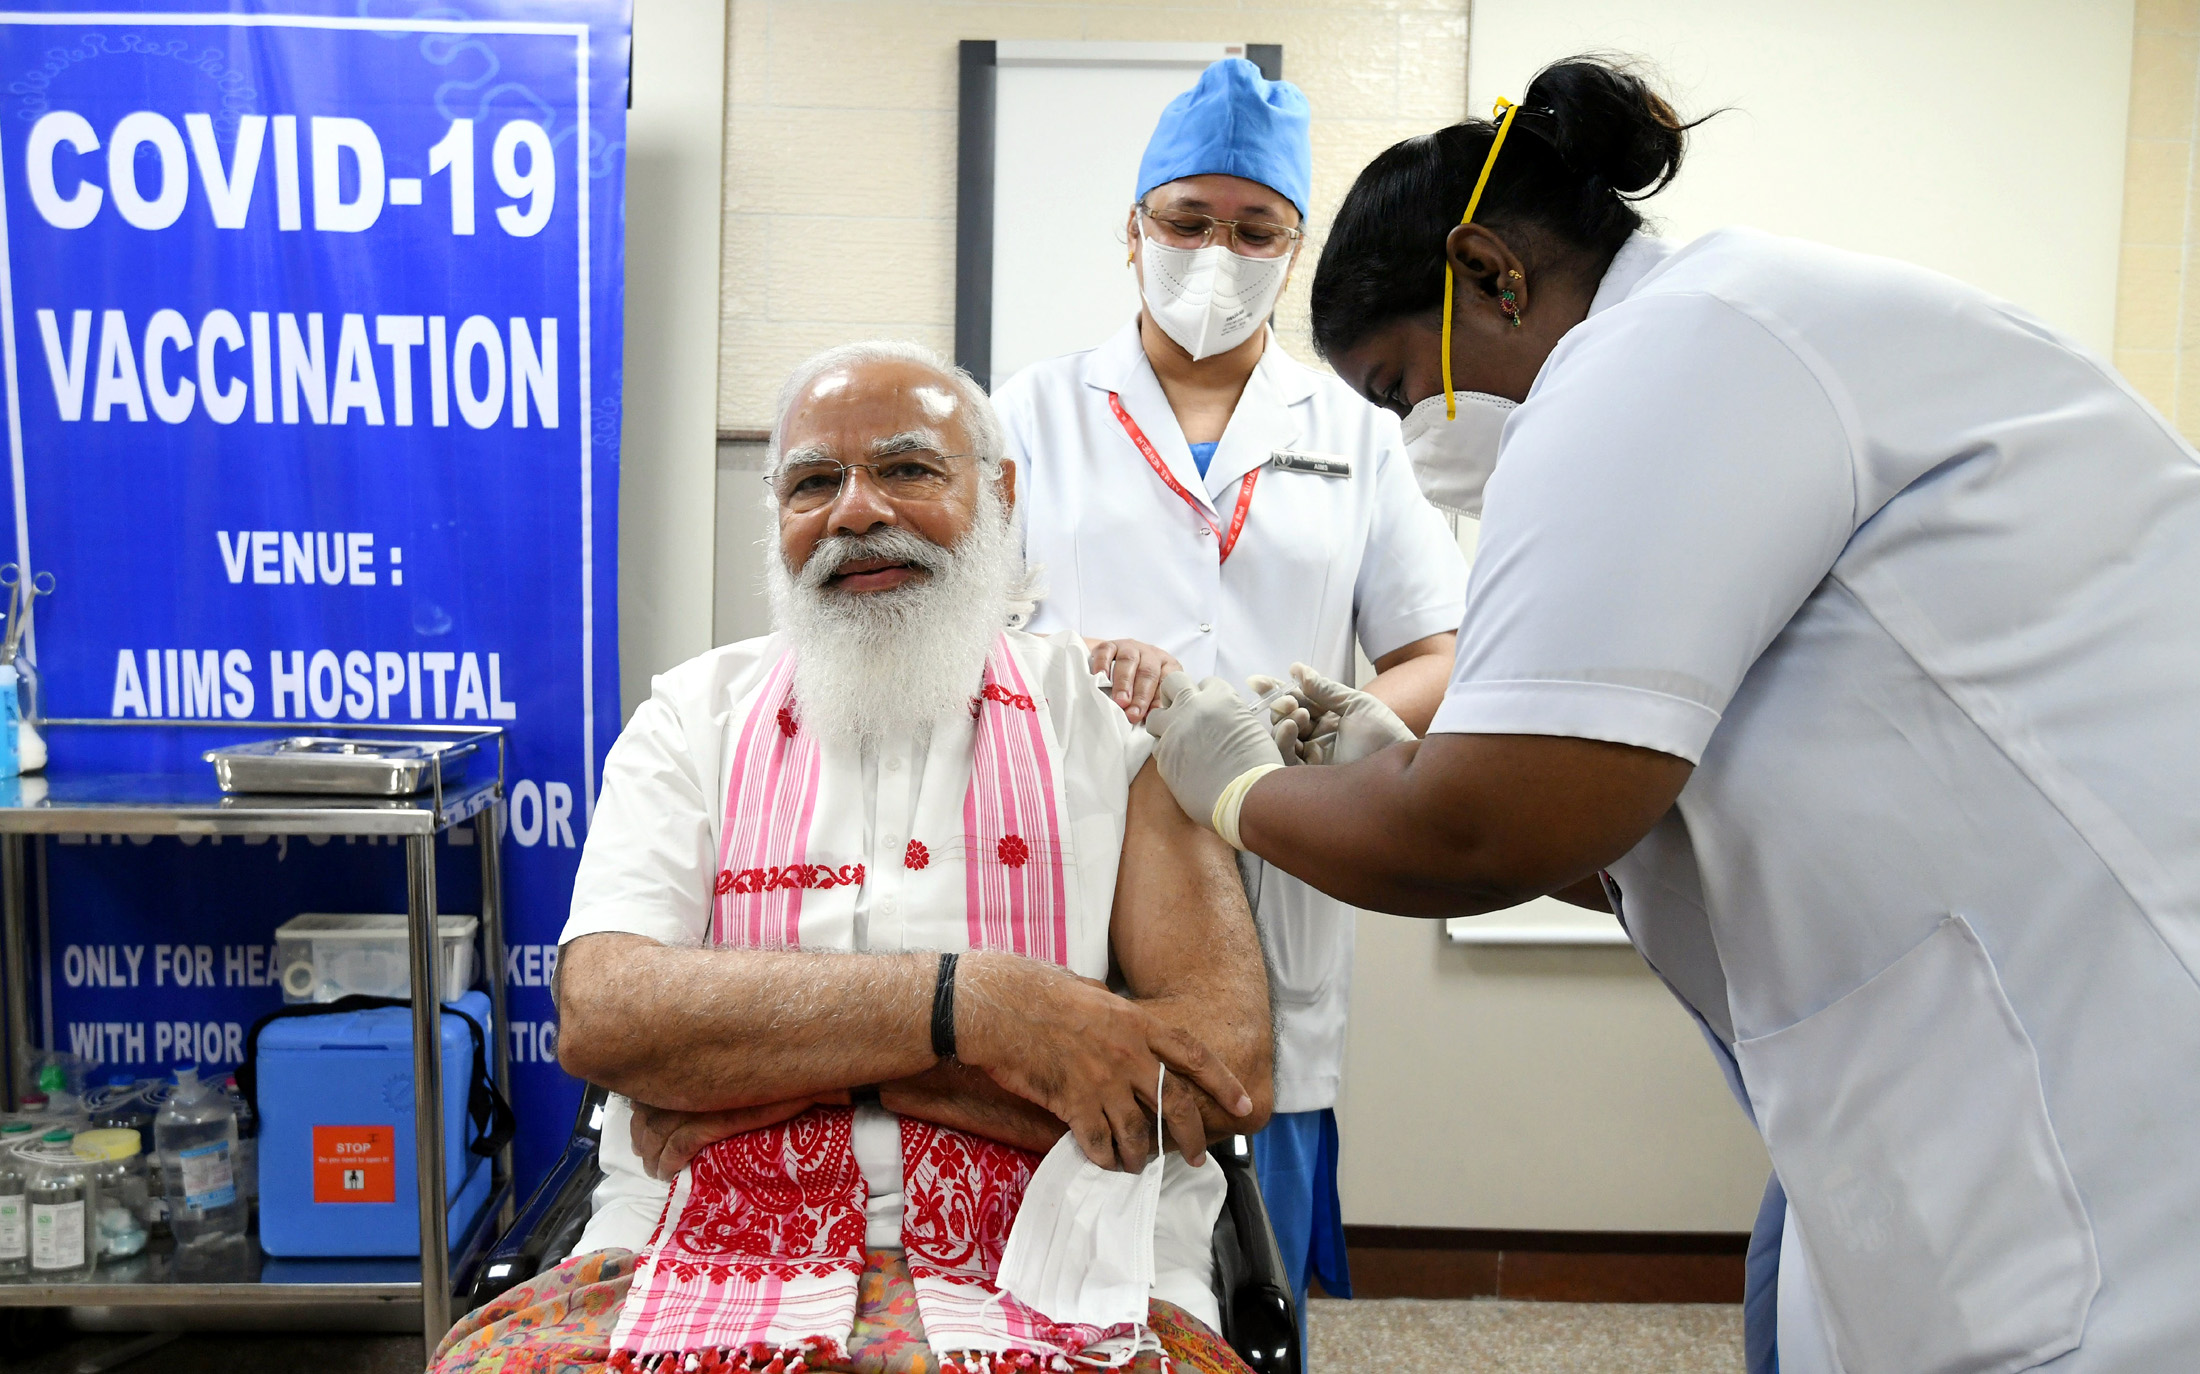 नरेंद्र मोदी का ‘टीका उत्सव’ कैसा रहा? आंकड़े बताते हैं कि यह प्रभावी नहीं रहा